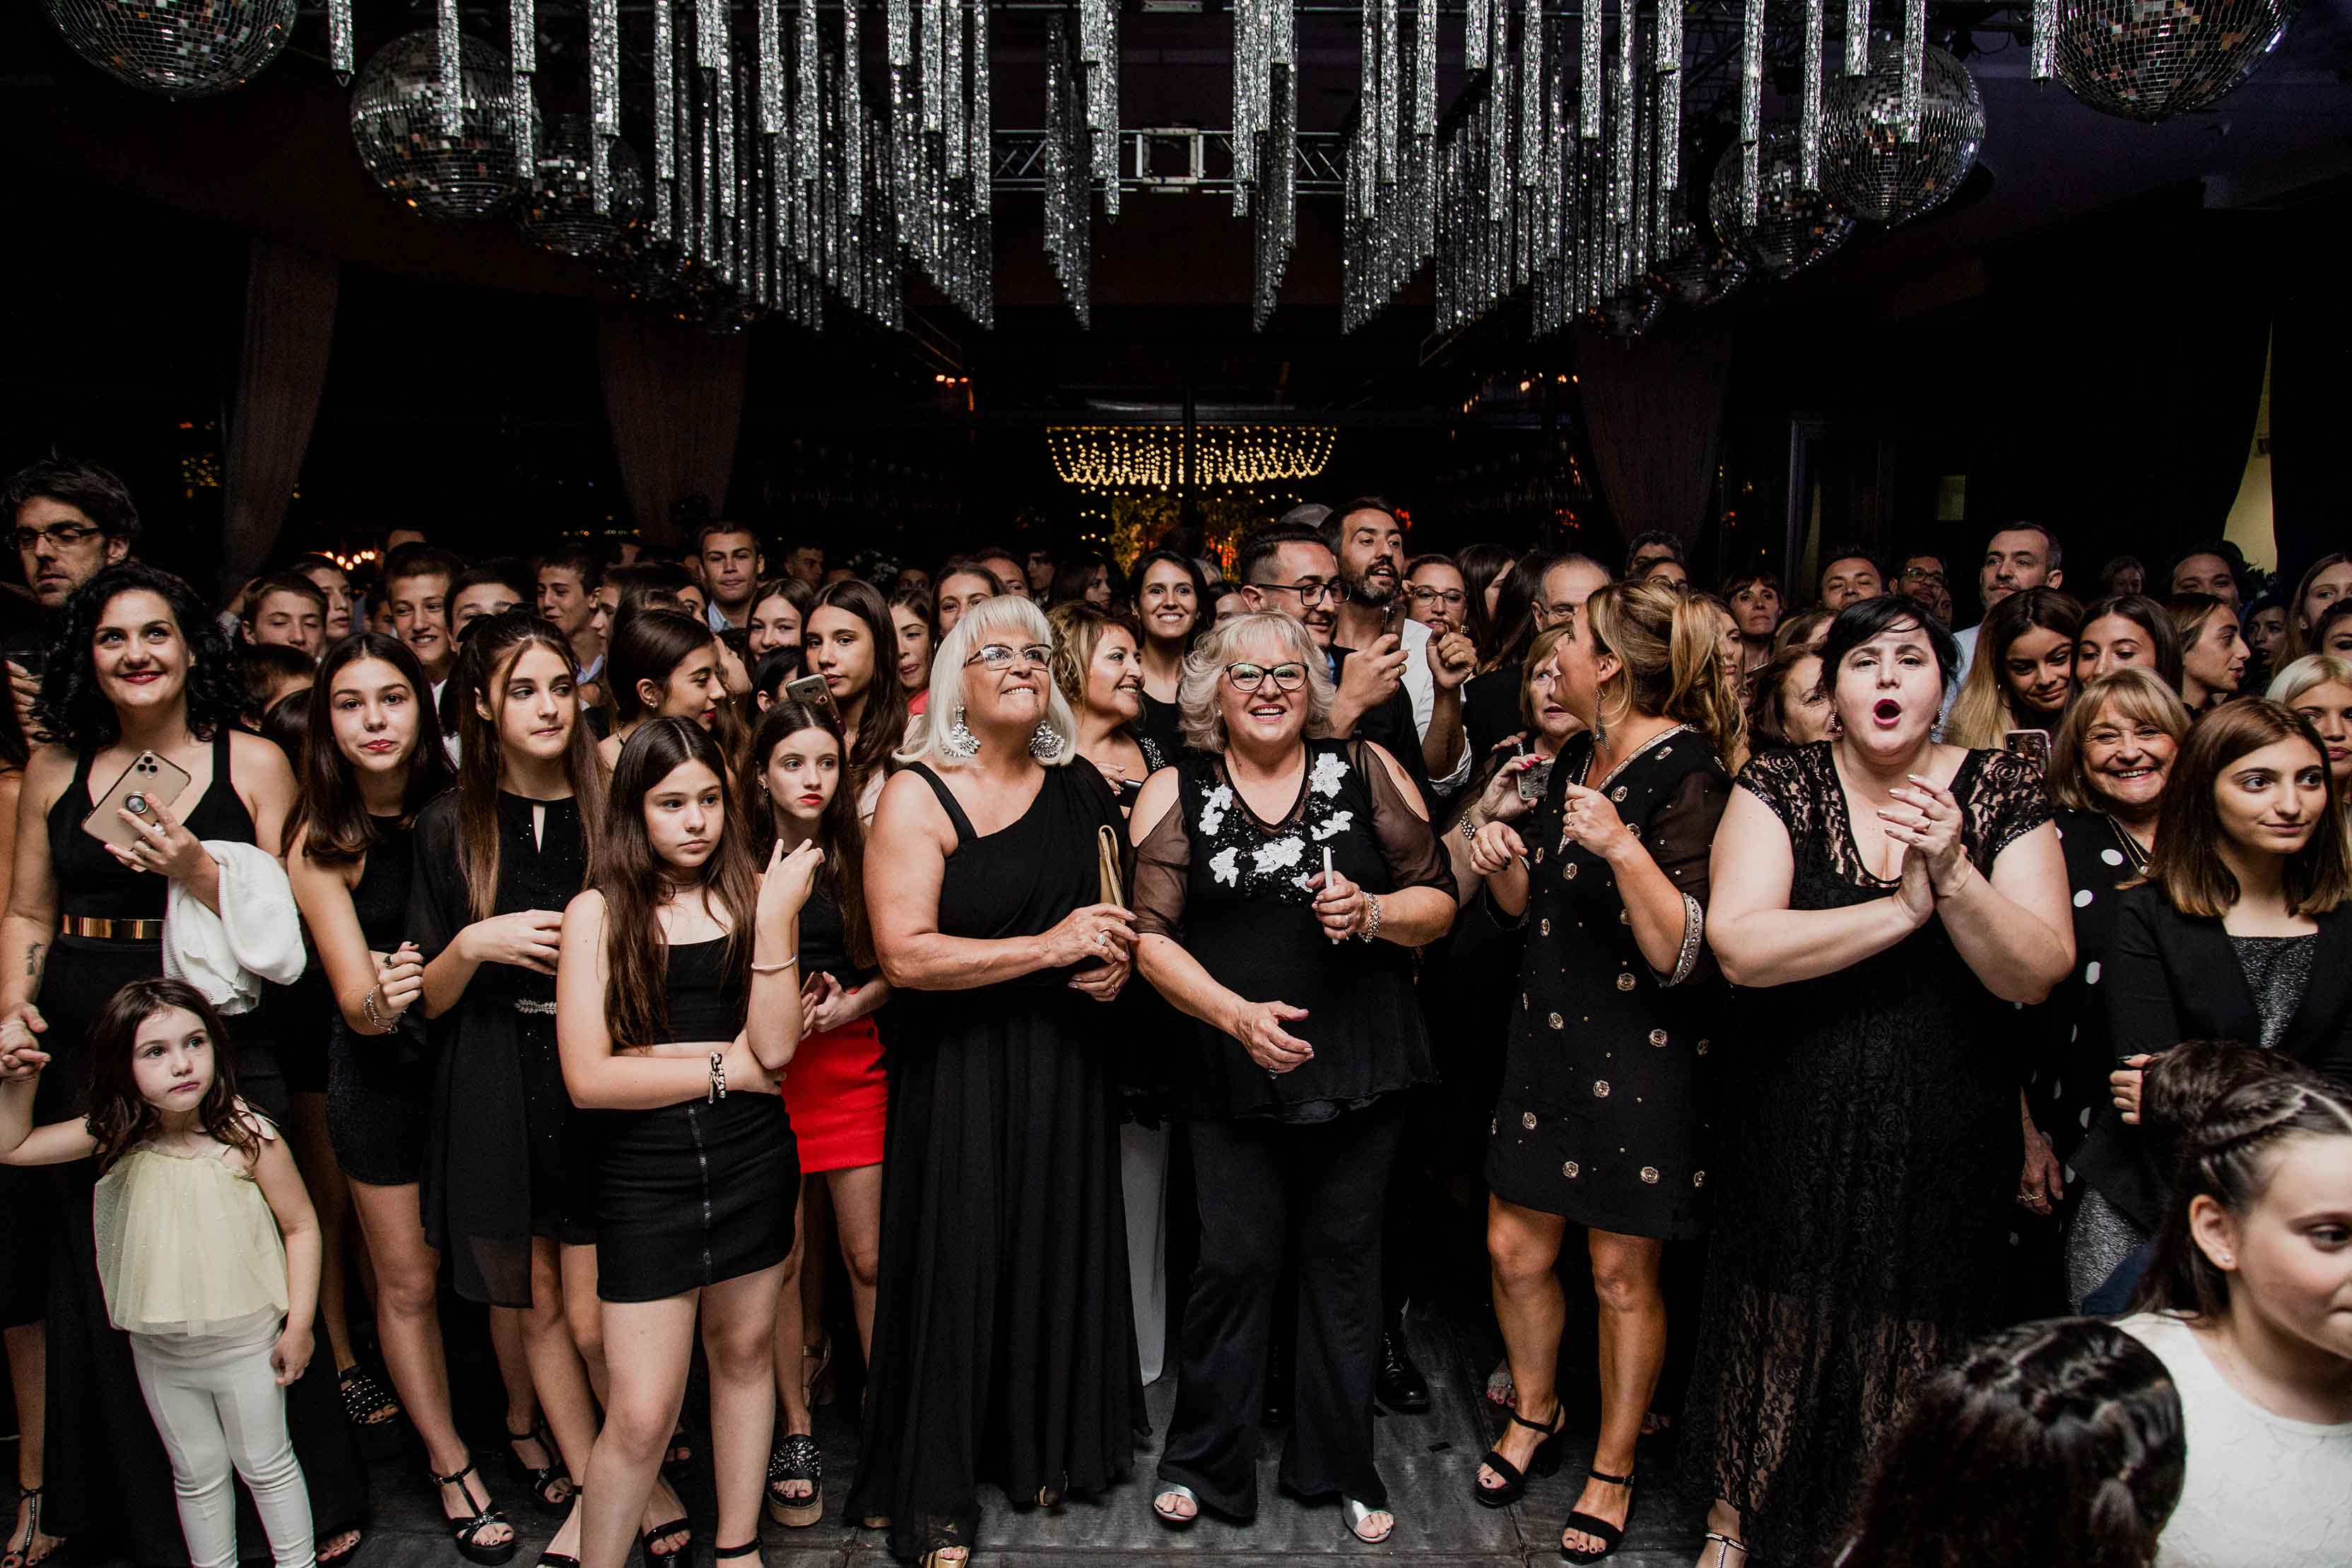 Fotos de la fiesta de quince de Chiara en Rosario realizadas por Bucle Fotografias Flor Bosio y Caro Clerici